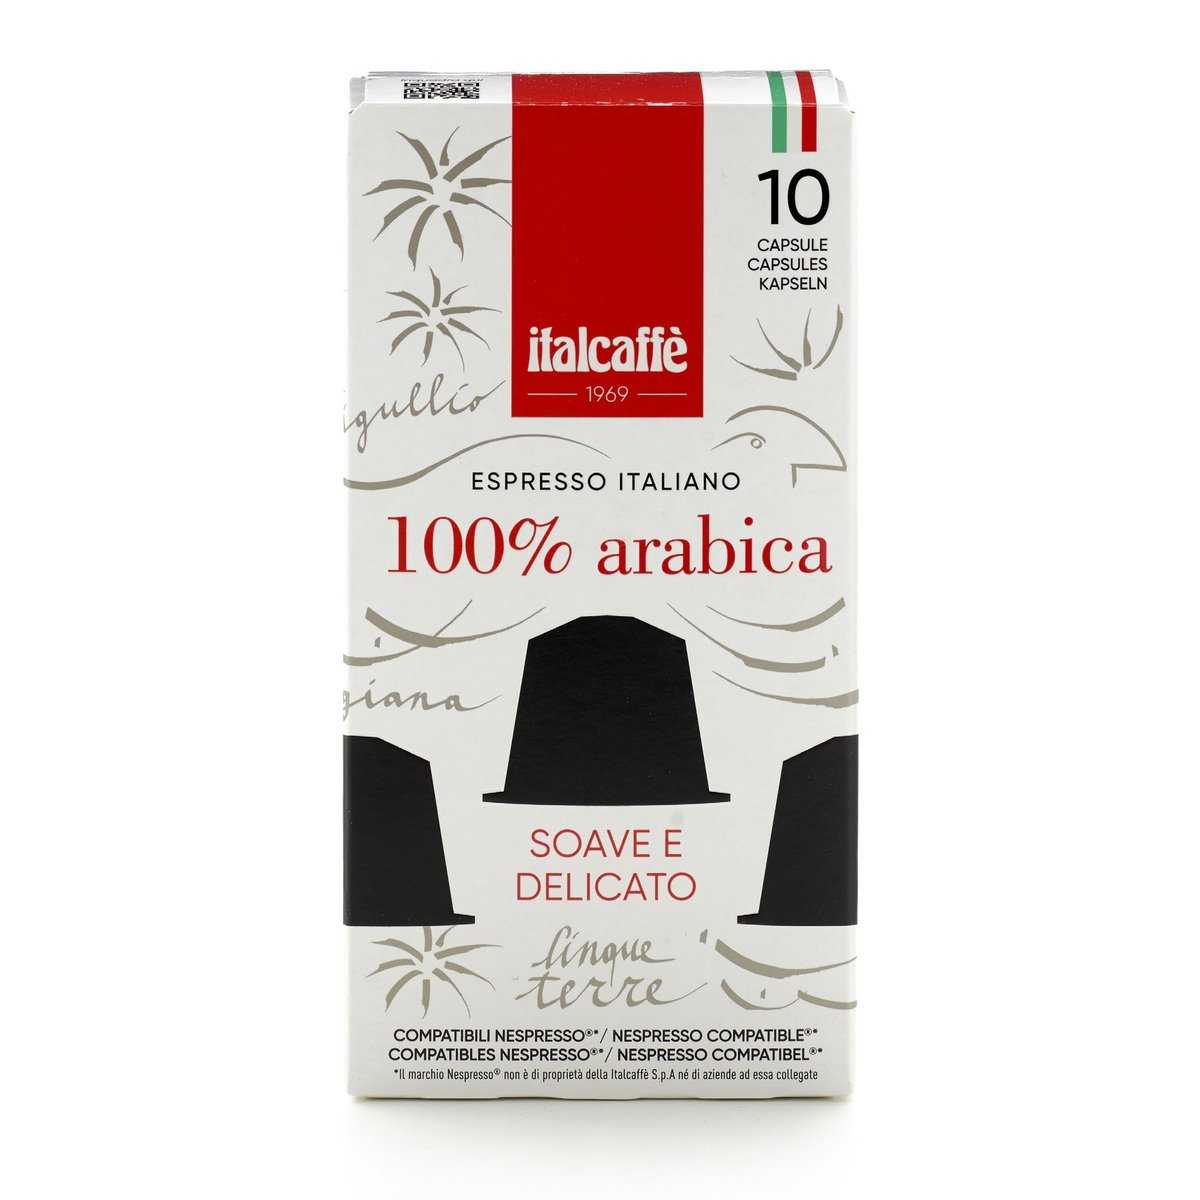 Italcaffe Espresso Italiano 100% Arabica Capsule 10 pcs